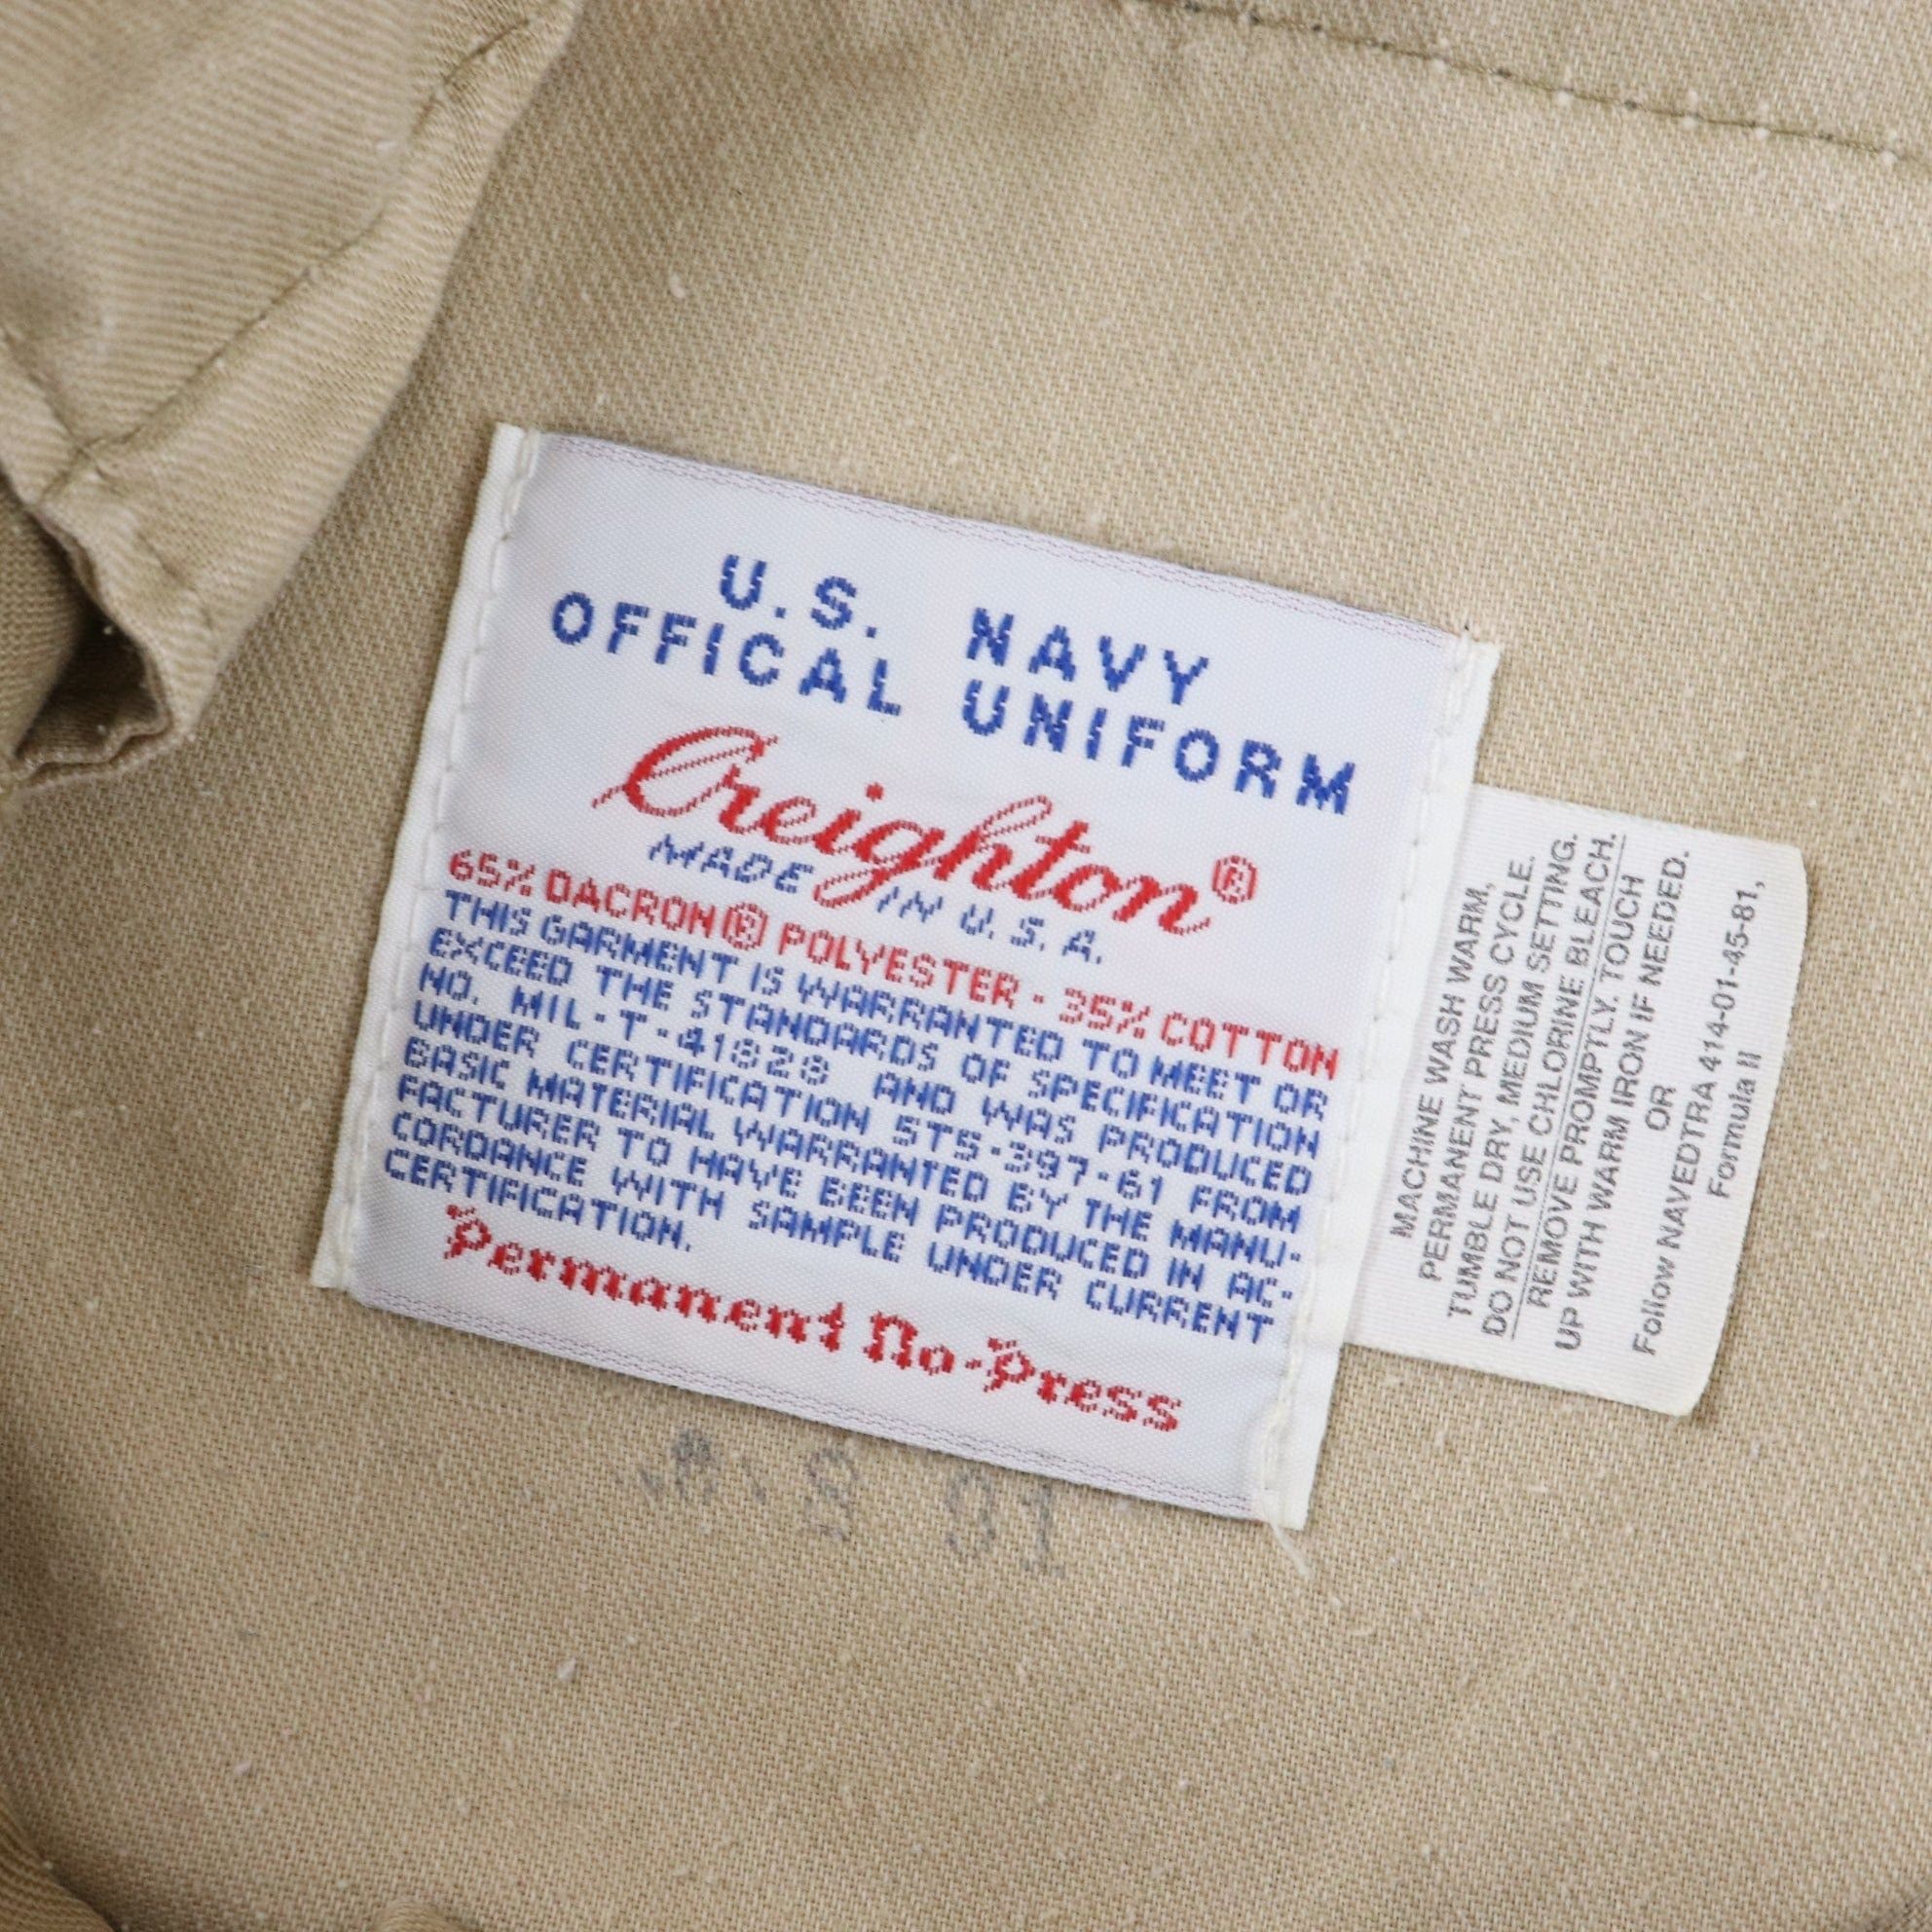 Vintage Vintage US Navy Creighton Uniform Pants Size 36 x 30 Size US 36 / EU 52 - 5 Preview